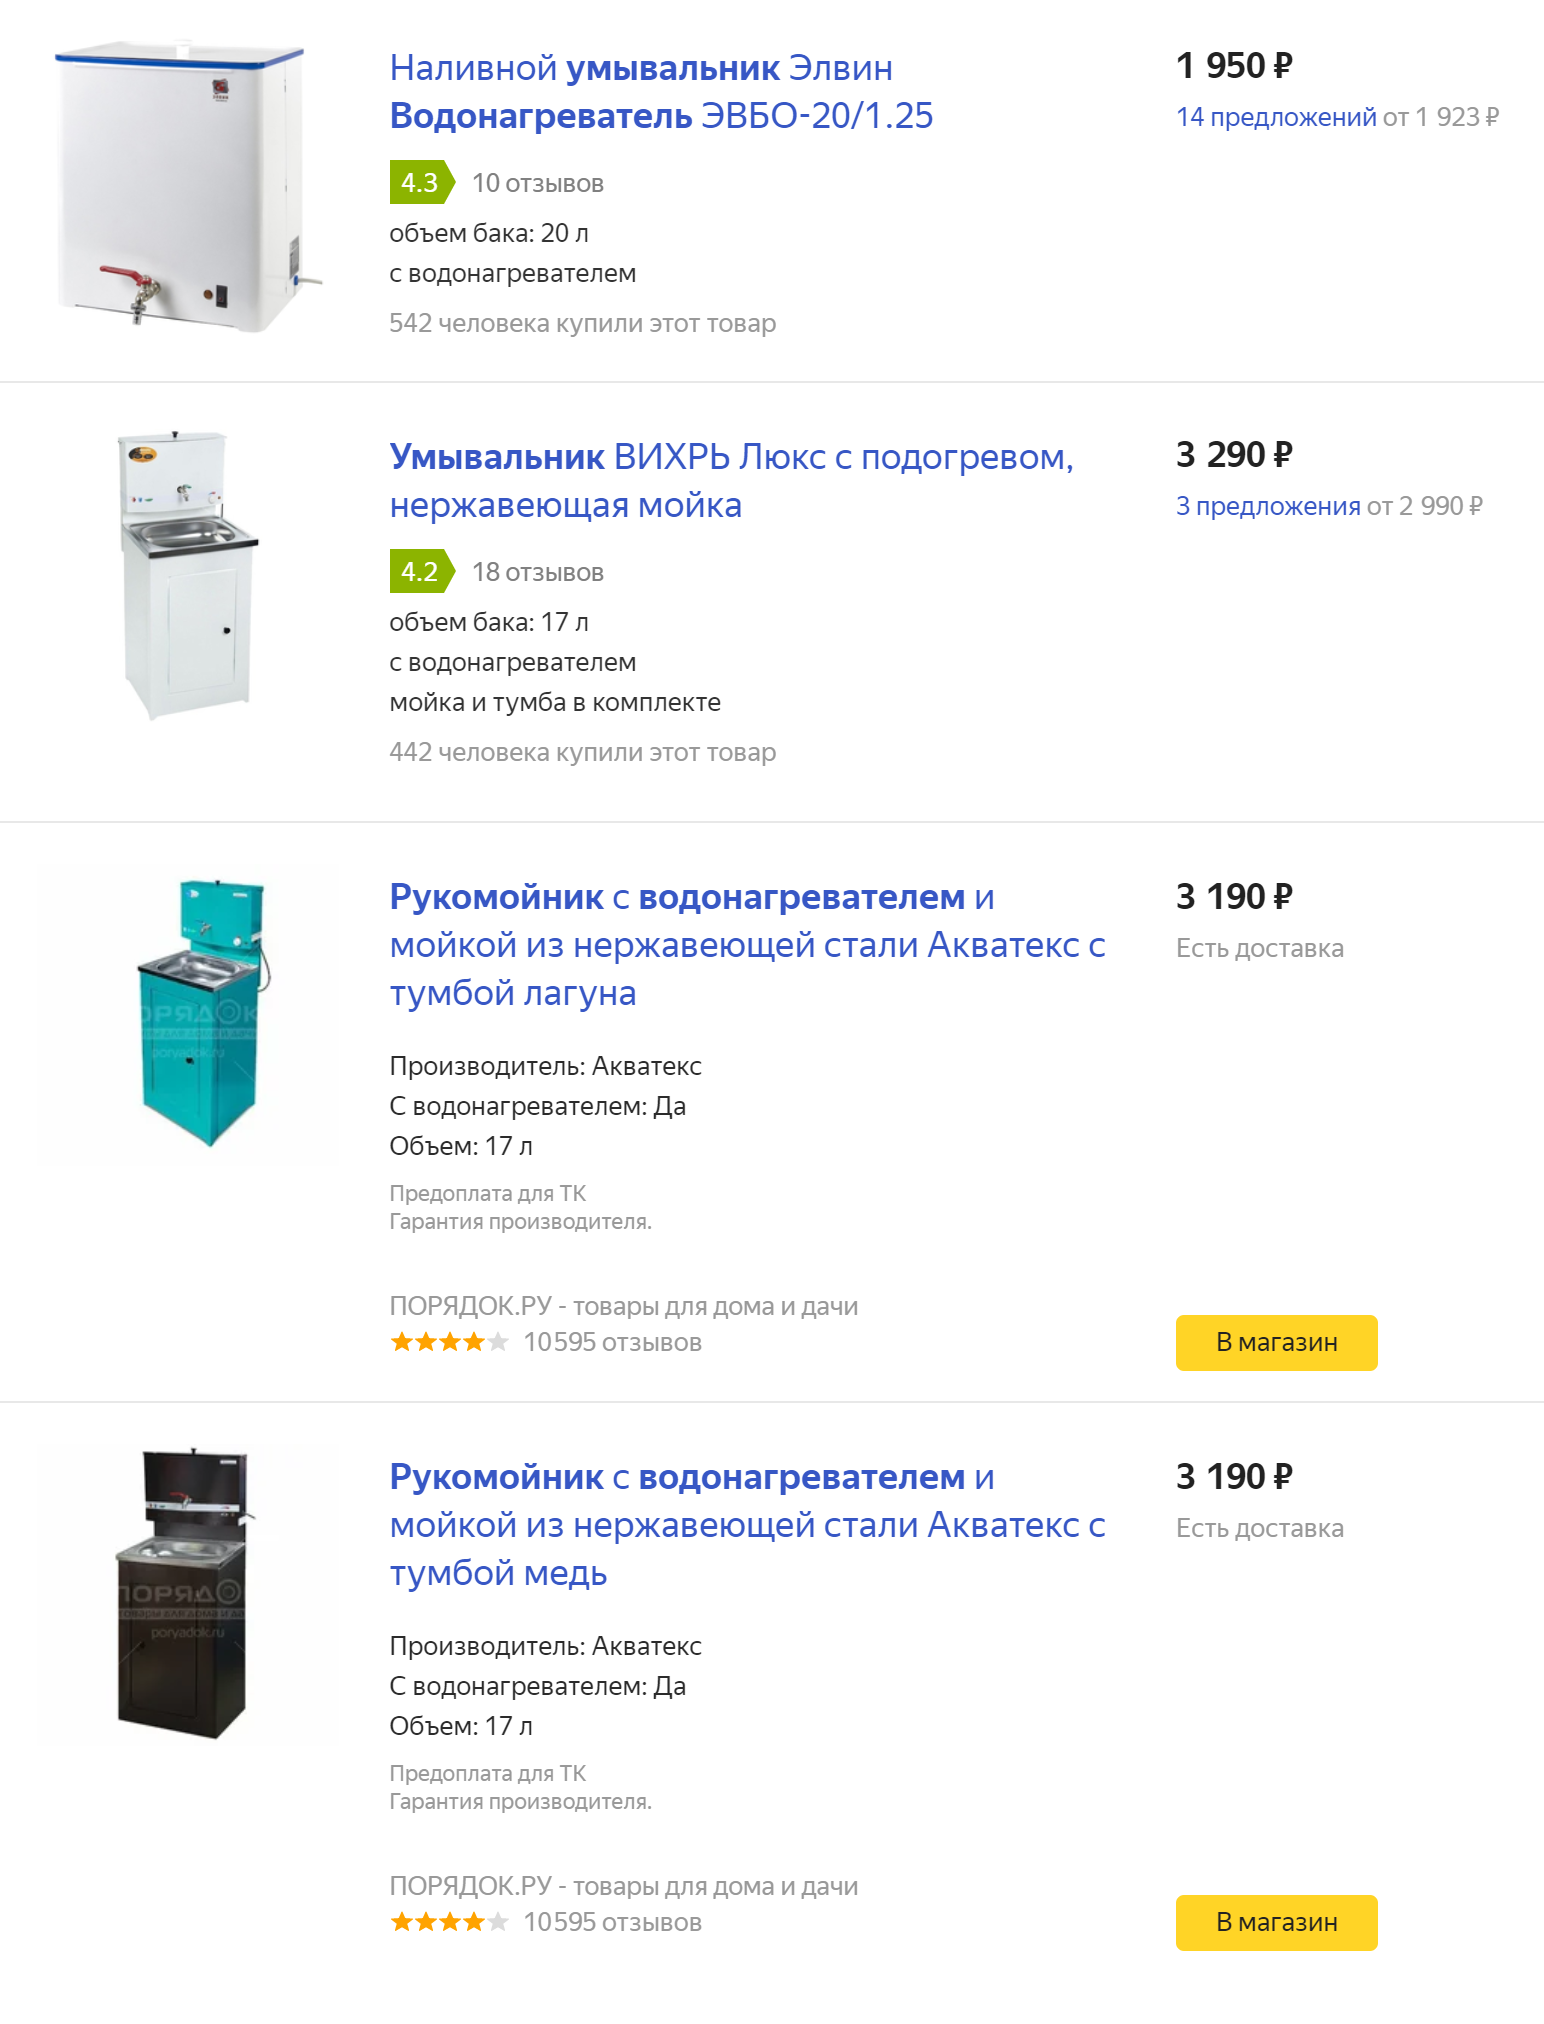 А вот что предлагает «Яндекс-маркет»: первый — наш водонагреватель, ниже варианты готового рукомойника с водонагревателем, раковиной тумбой